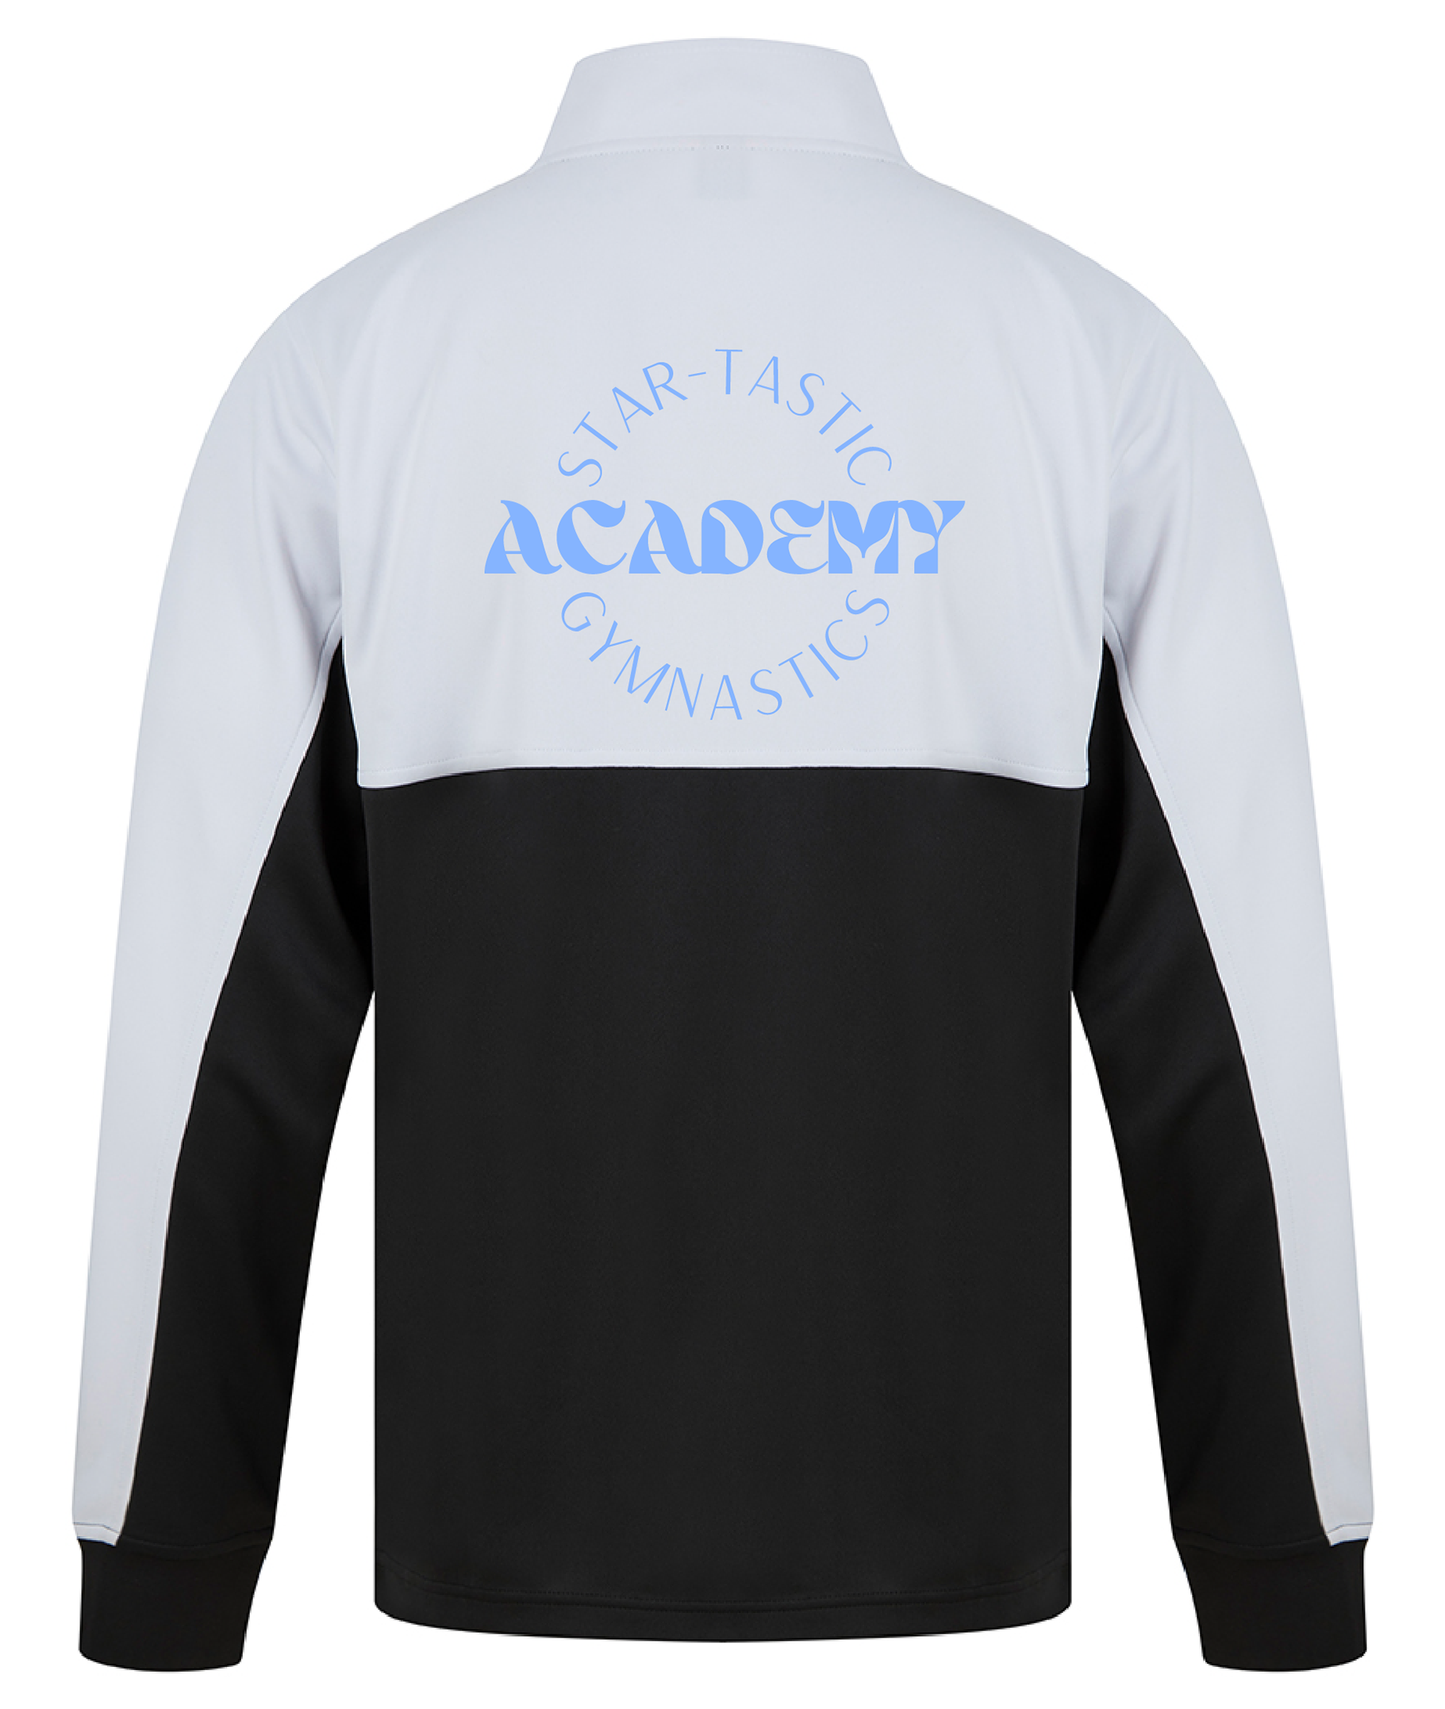 Personalised Academy Tracksuit Jacket